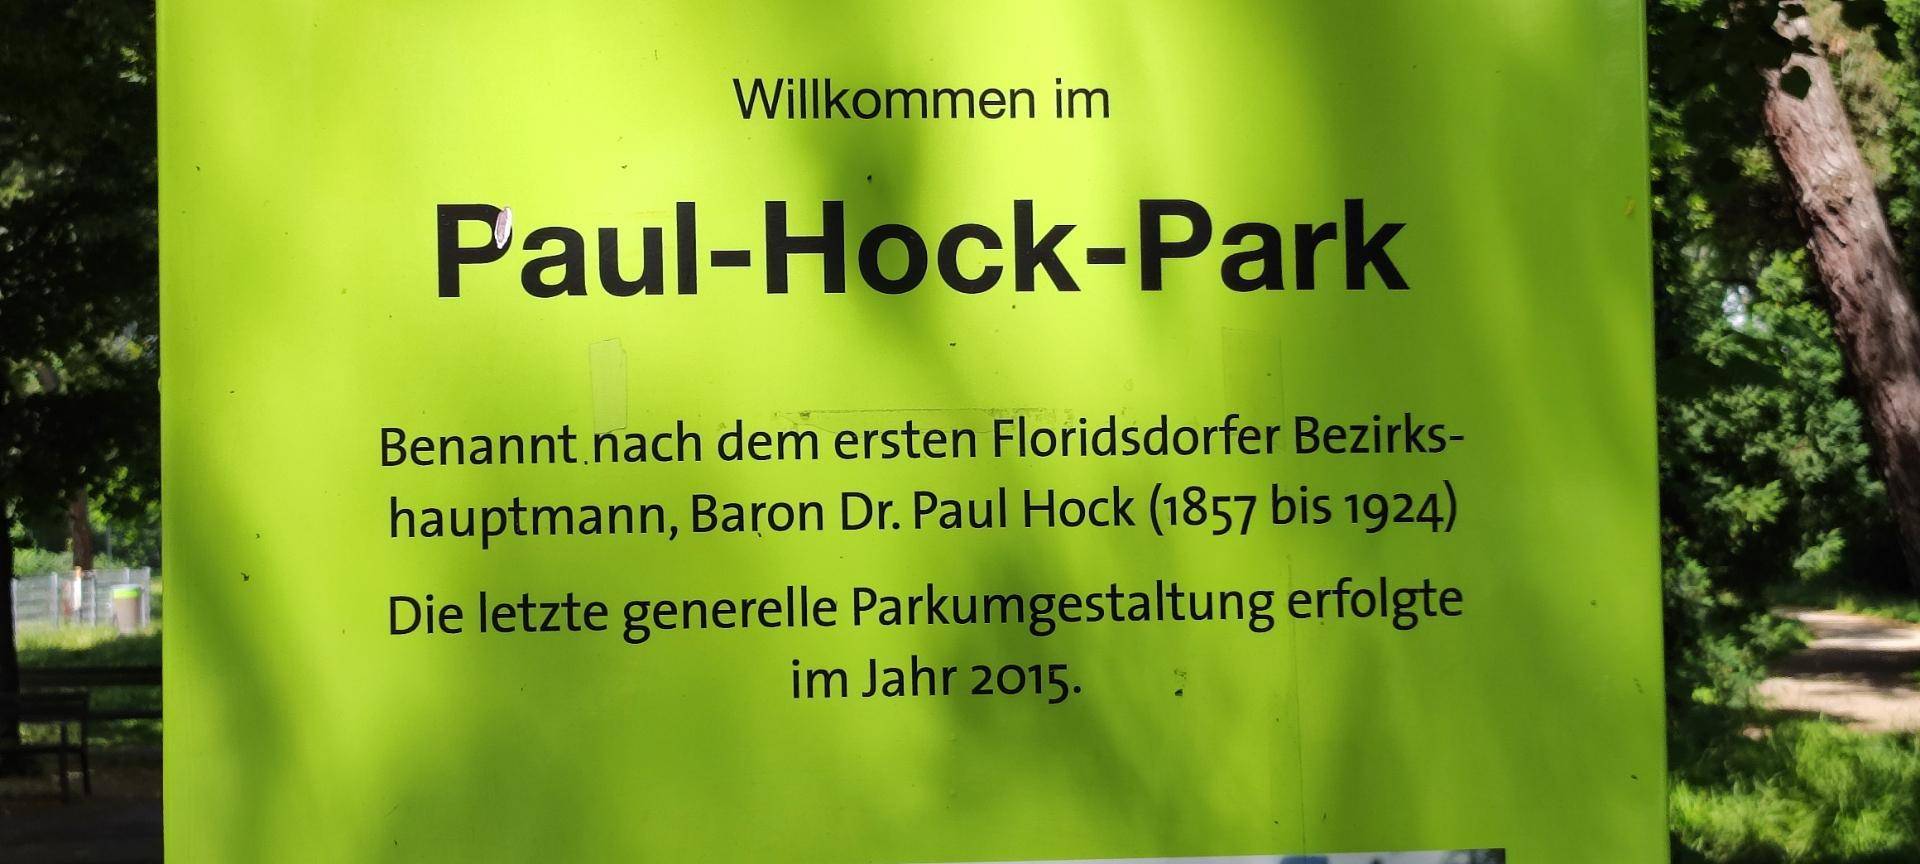 Paul-Hock-Park in der Nähe